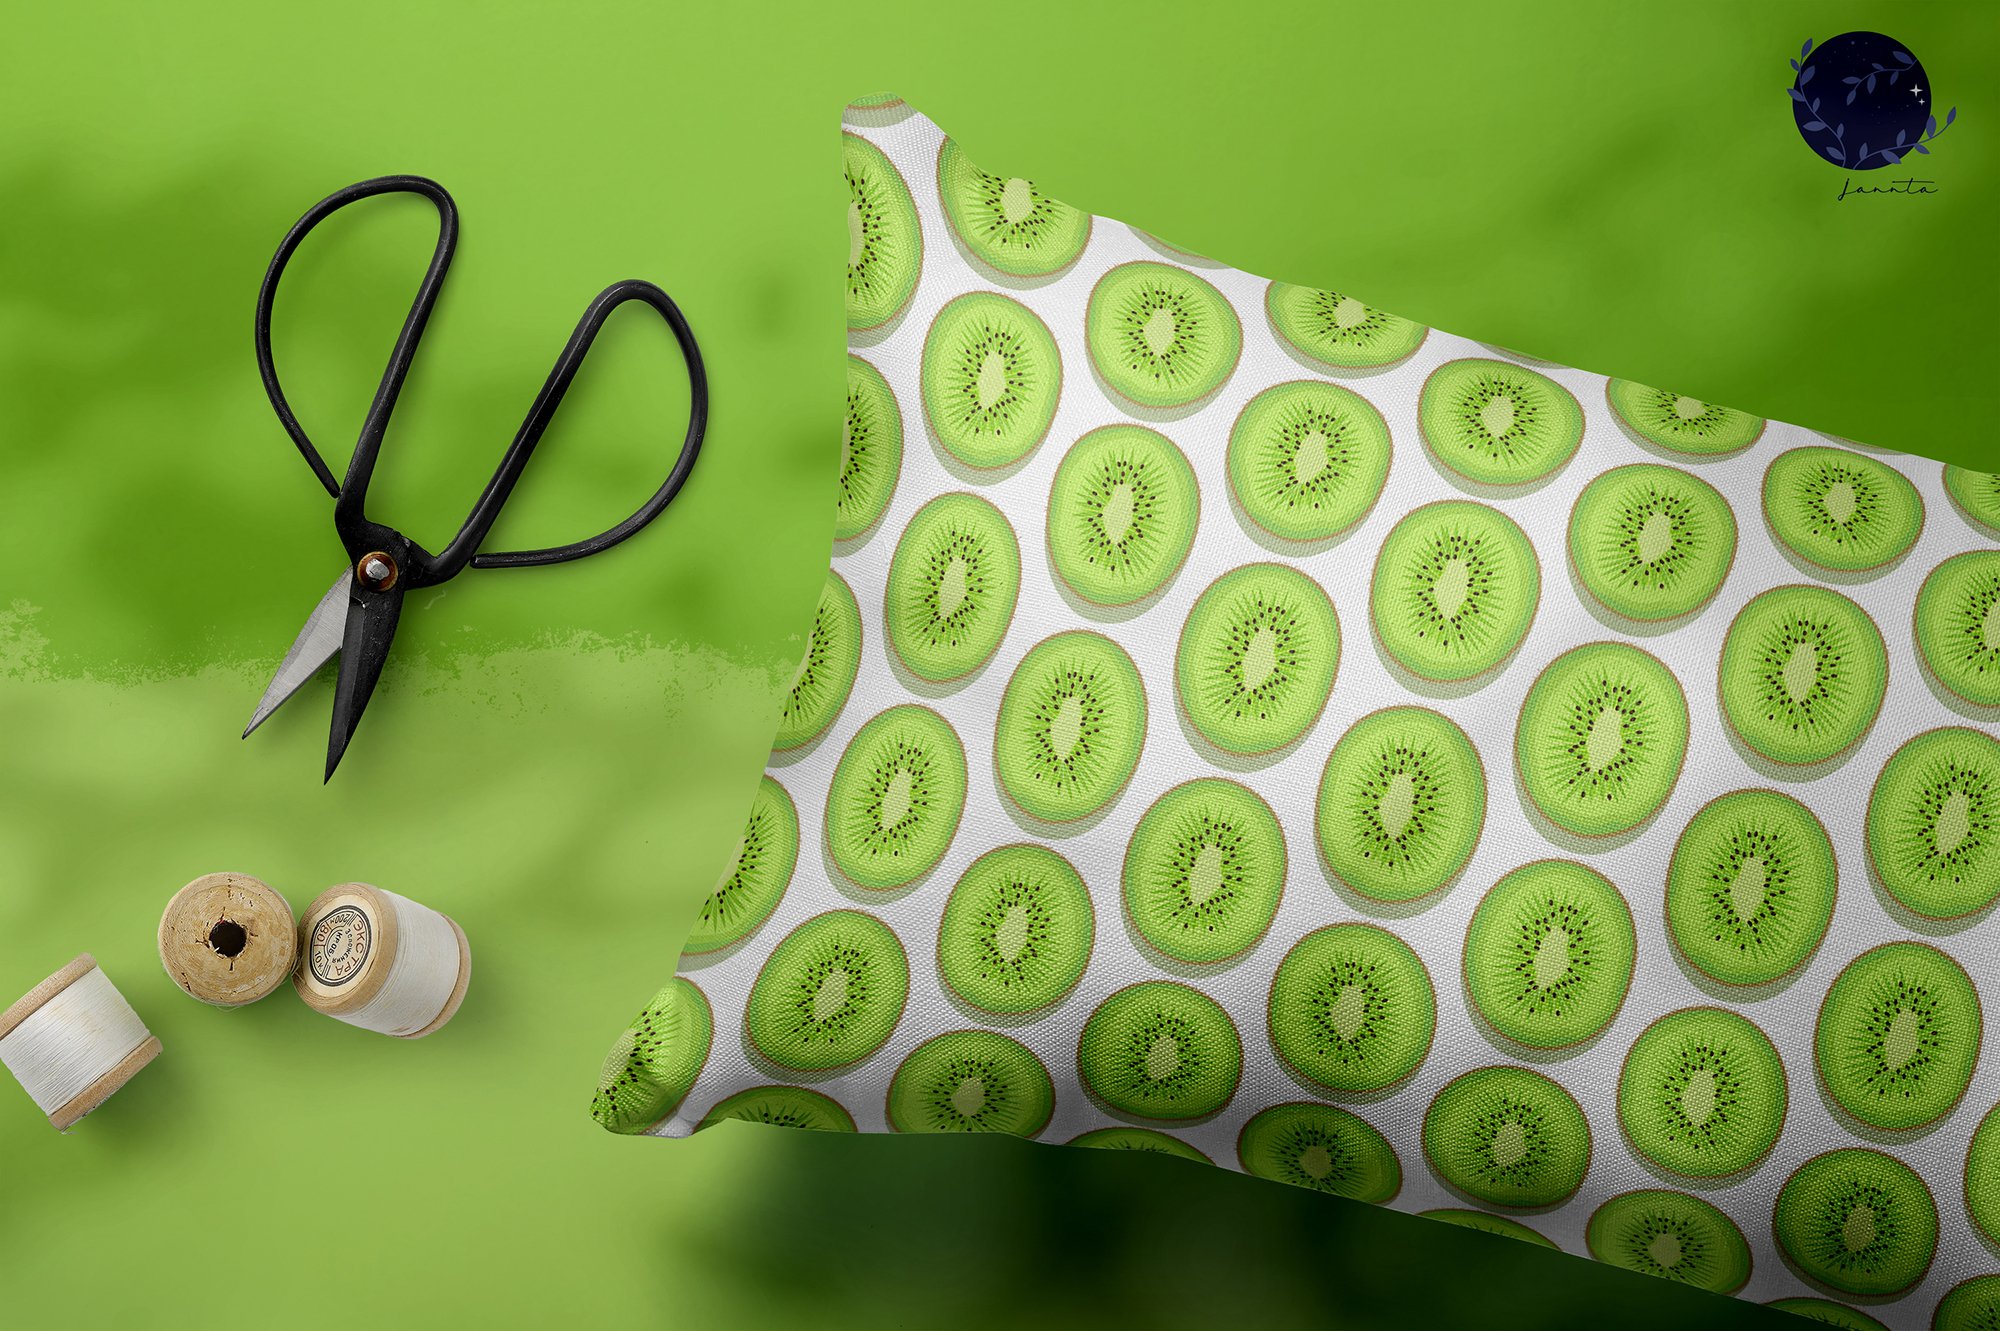 White pillow with the green kiwis.